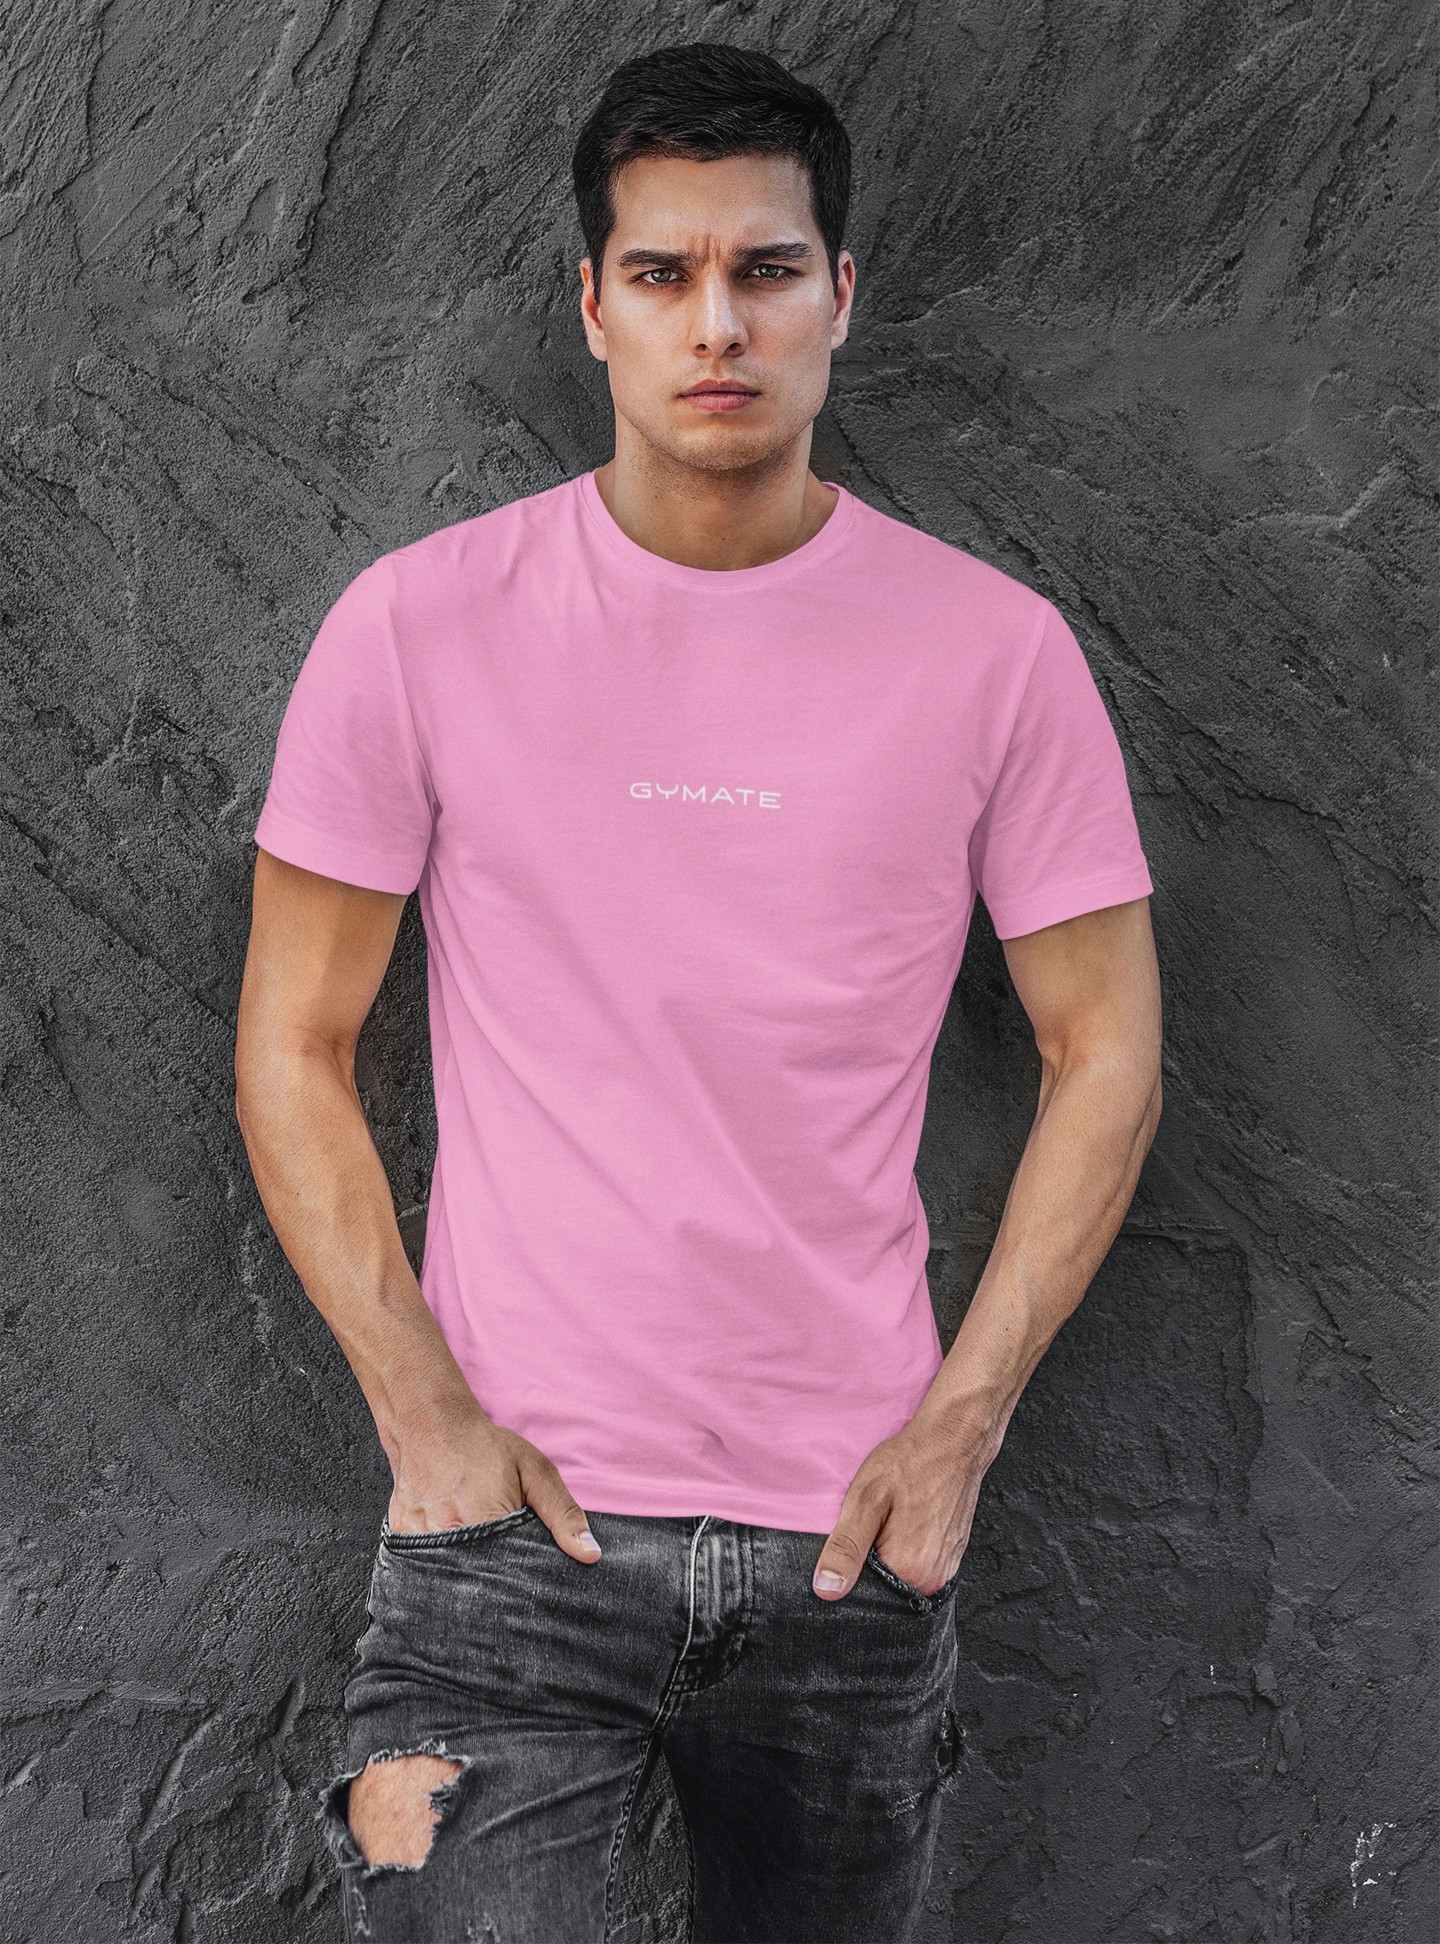 Designer mens T shirts Original Gymate sml/ctr pink